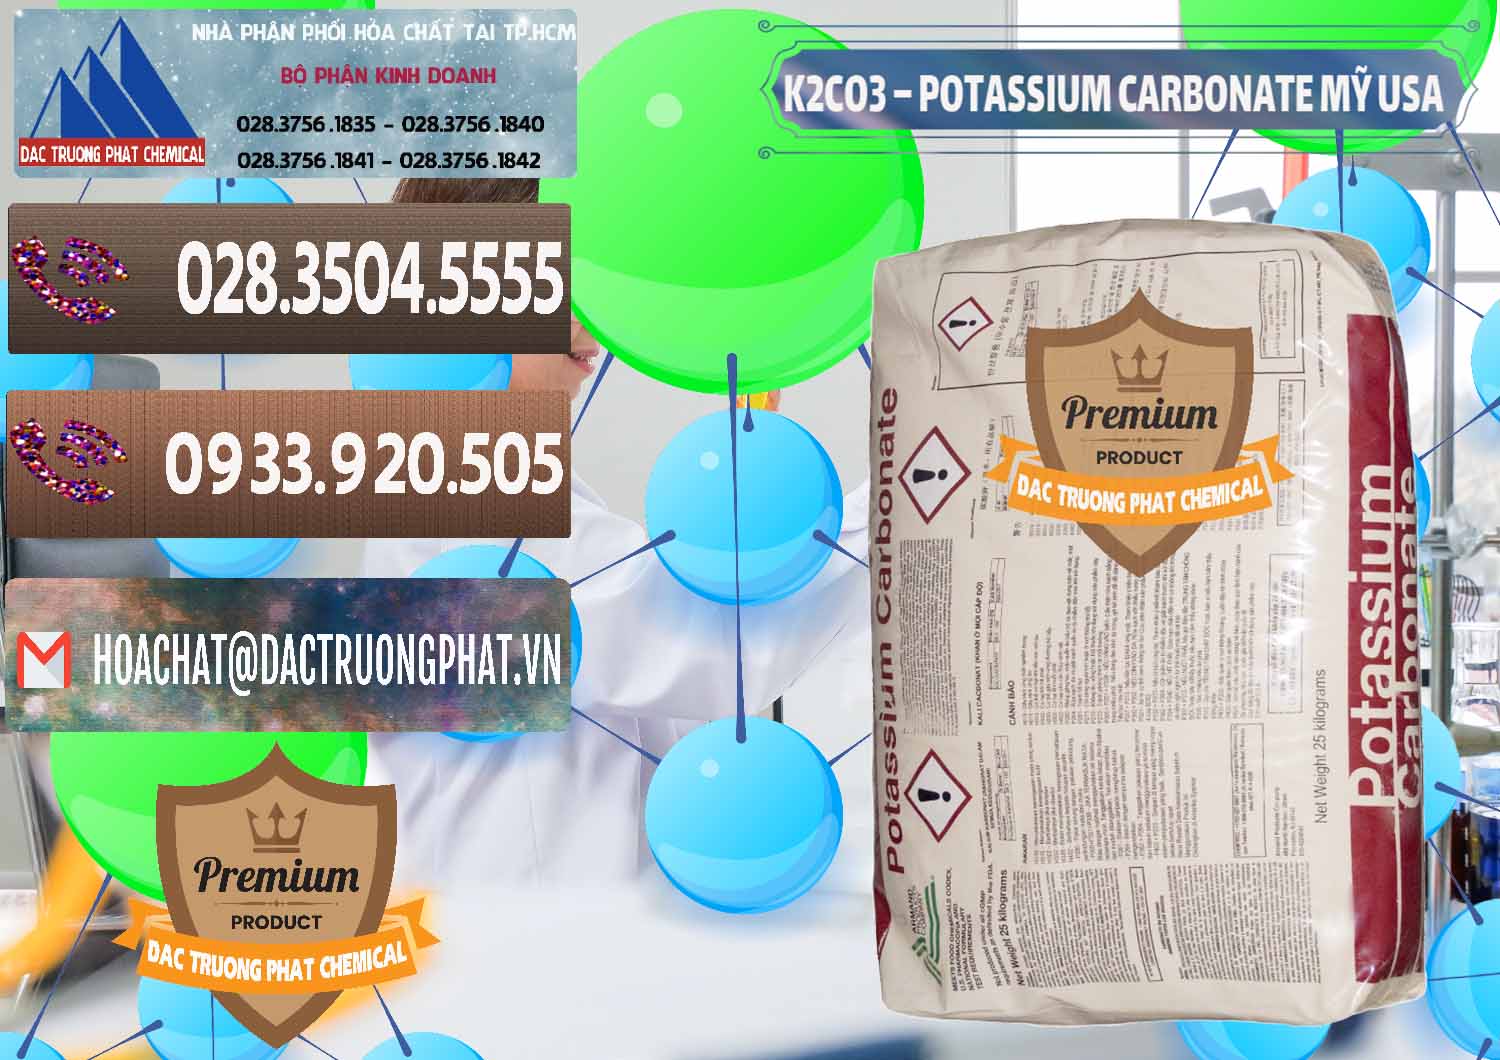 Cty bán _ cung ứng K2Co3 – Potassium Carbonate Mỹ USA - 0082 - Nơi chuyên nhập khẩu ( cung cấp ) hóa chất tại TP.HCM - hoachatviet.net